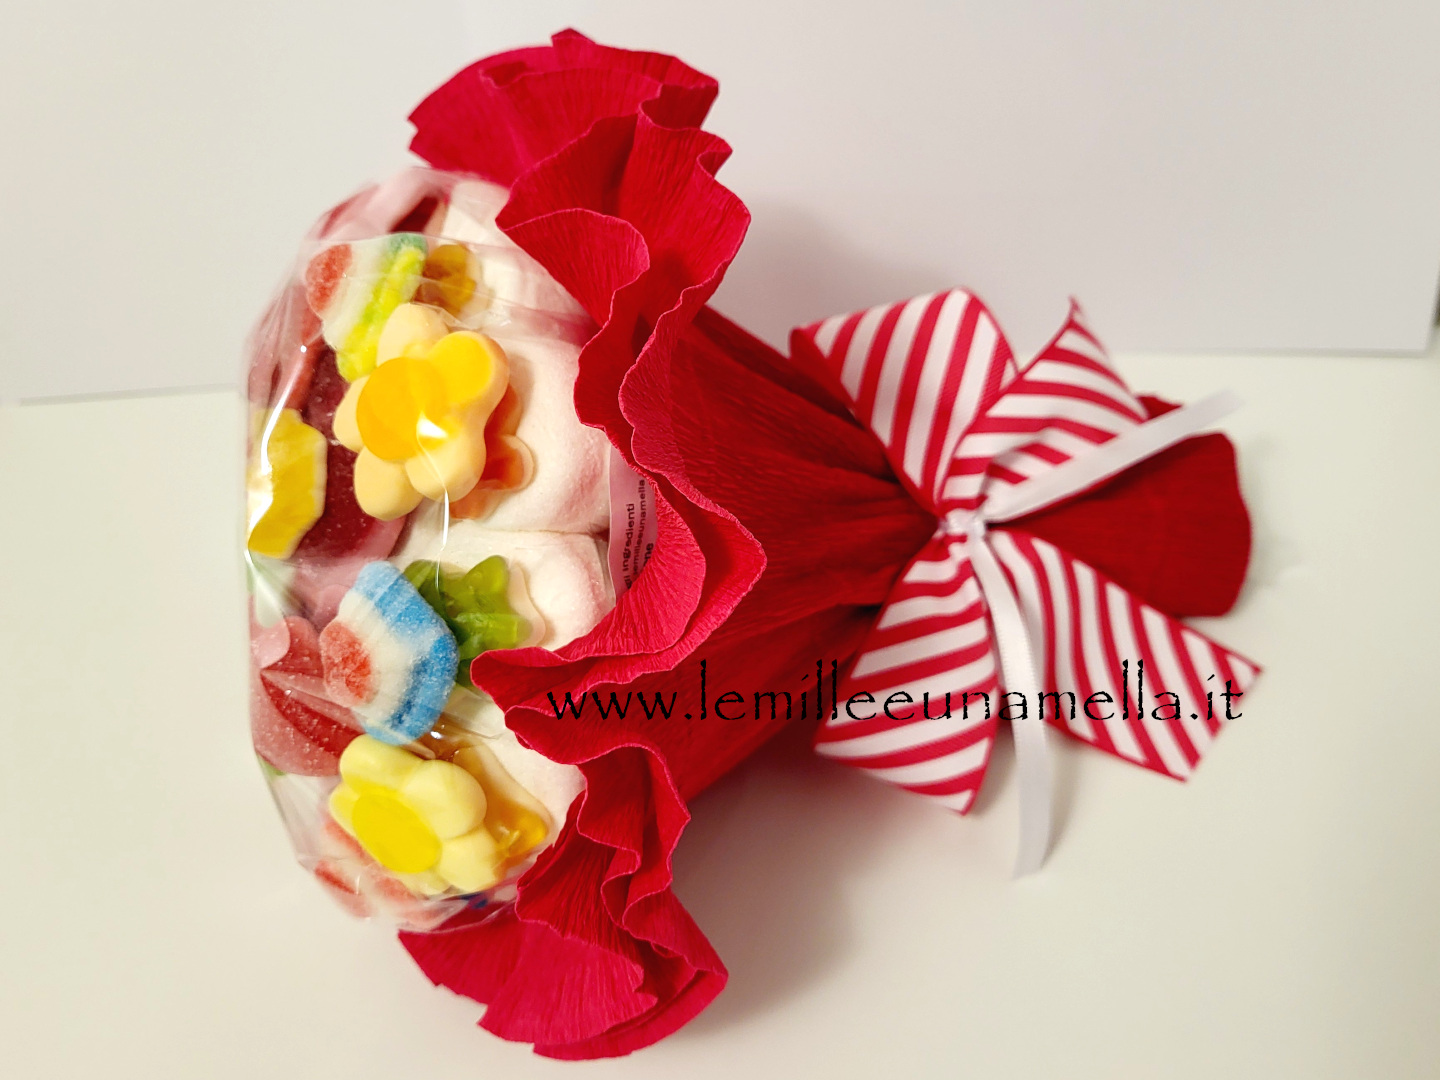 bouquet marshmallow caramelle gommose colorato grande vendita online Le Mille e una Mella